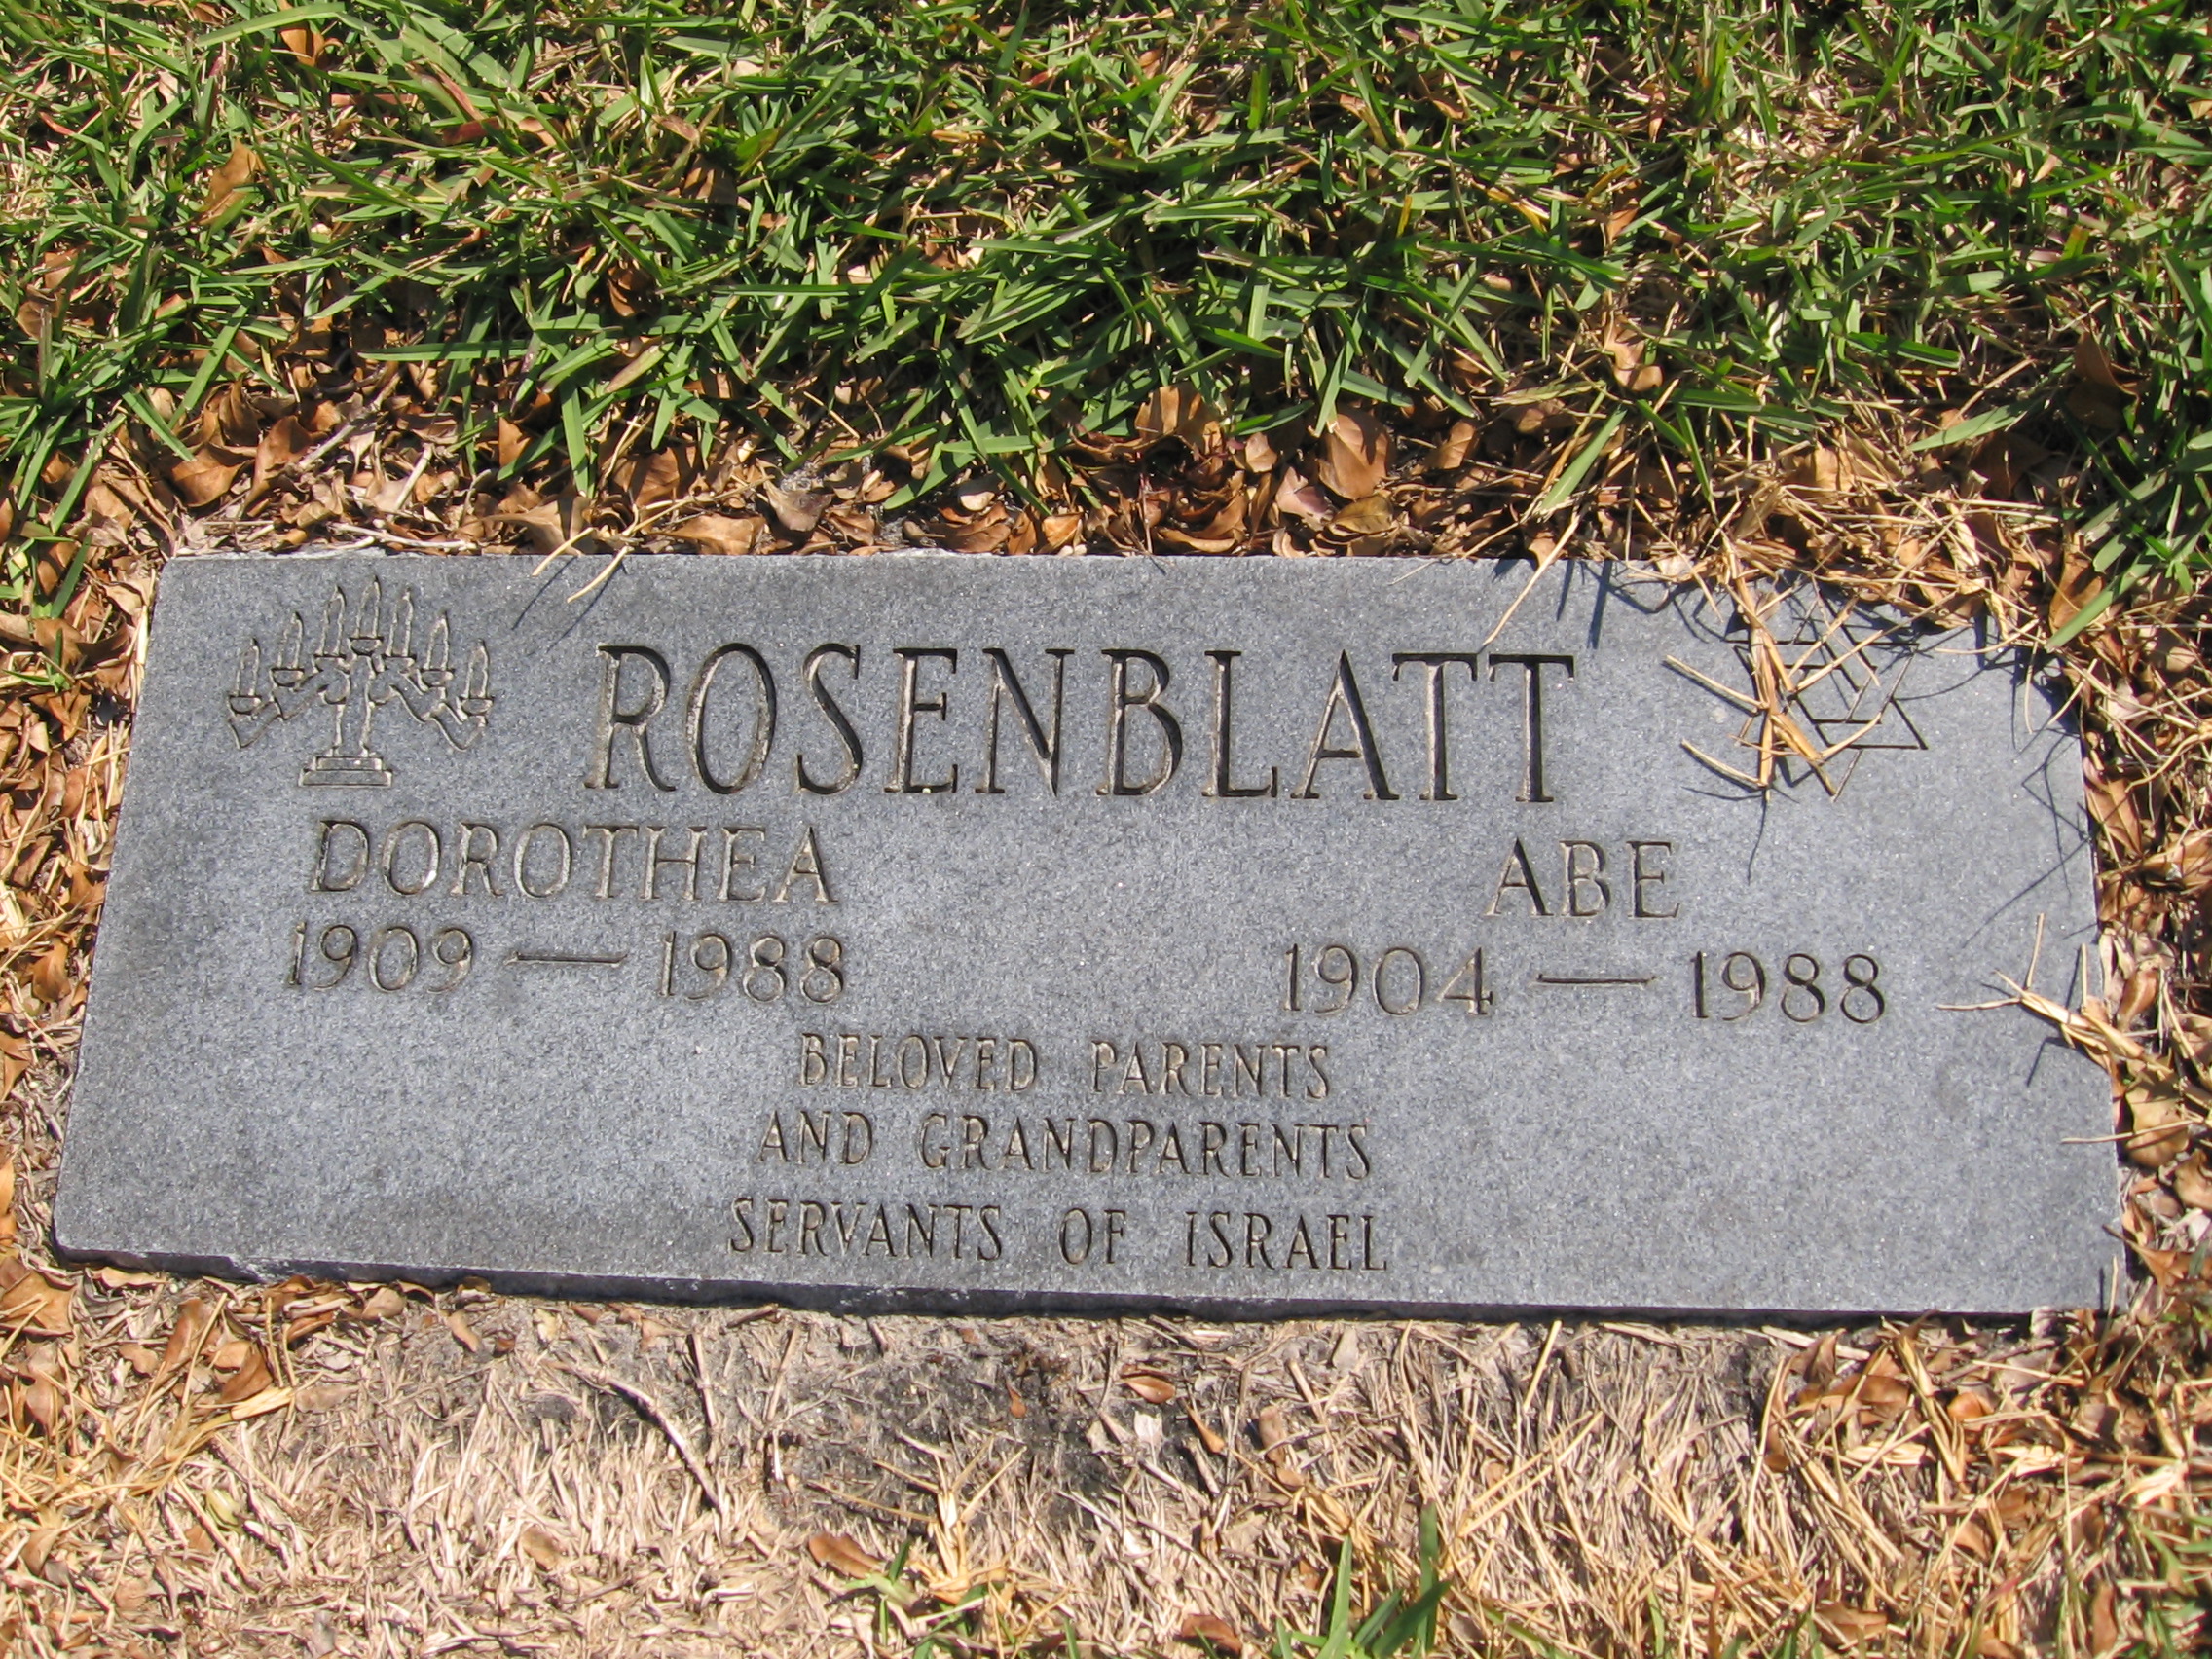 Abe Rosenblatt